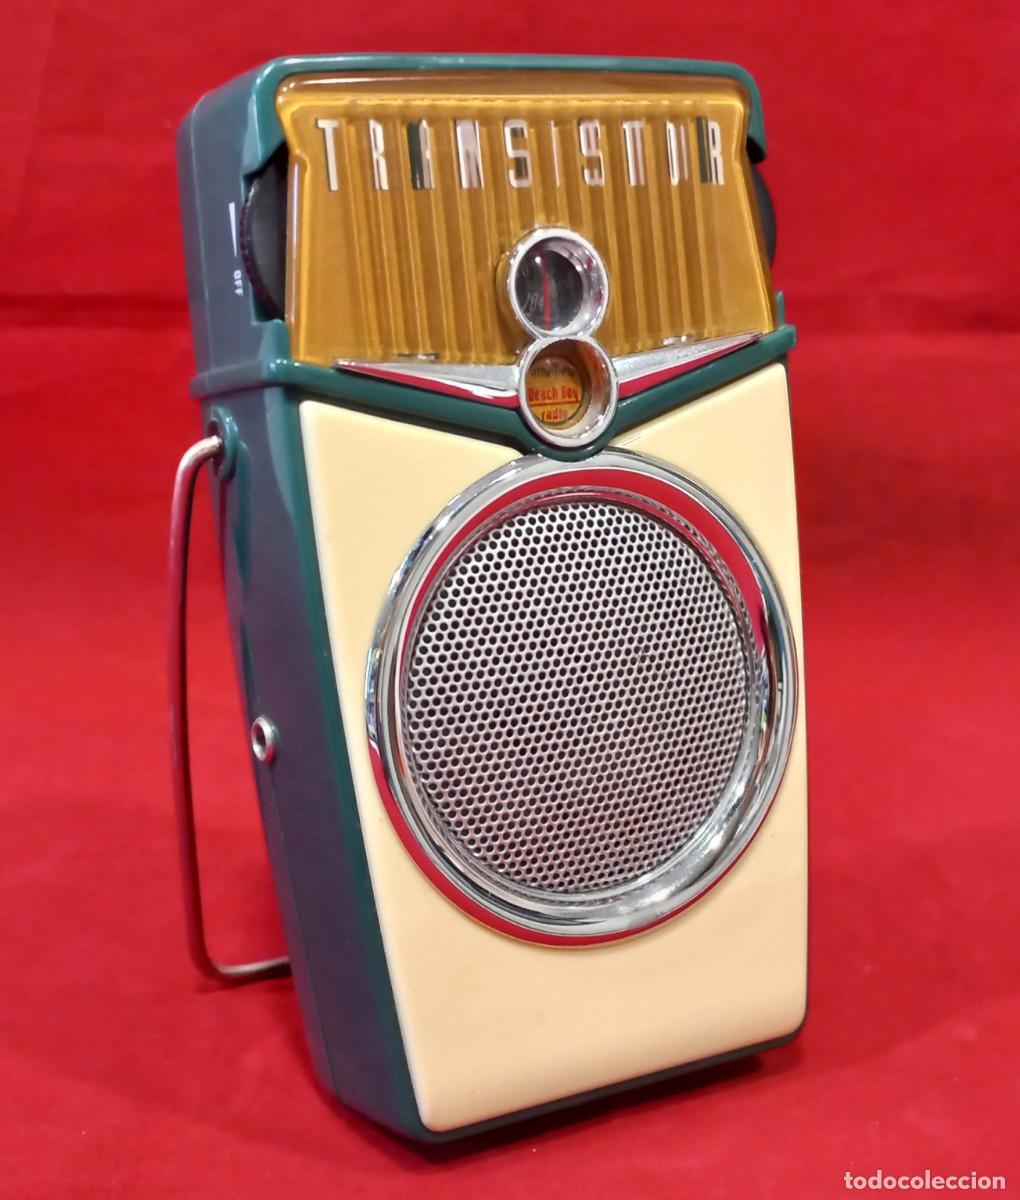 reproduccion de radio vintage - Compra venta en todocoleccion